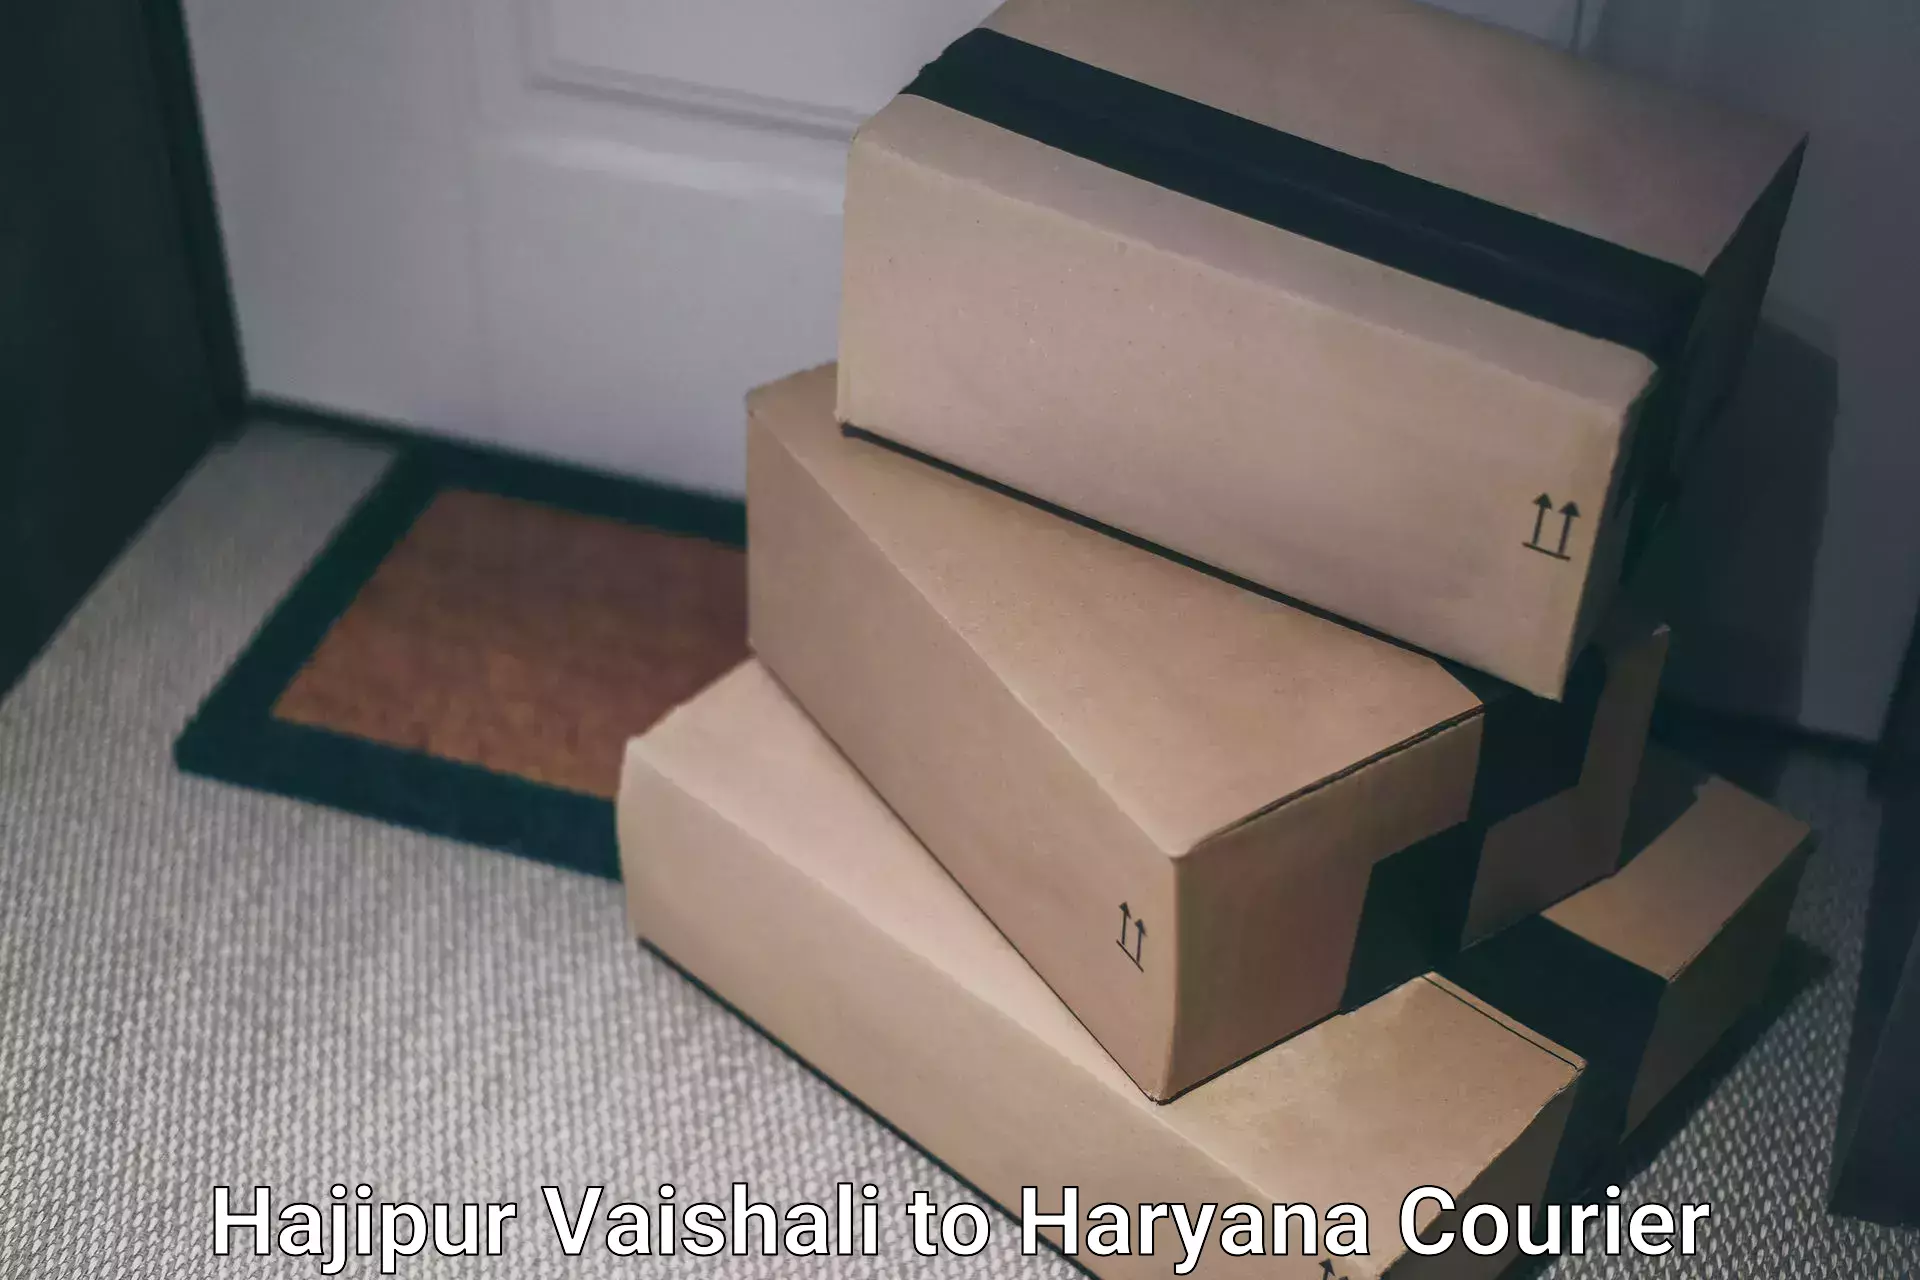 Comprehensive delivery network Hajipur Vaishali to Gurugram